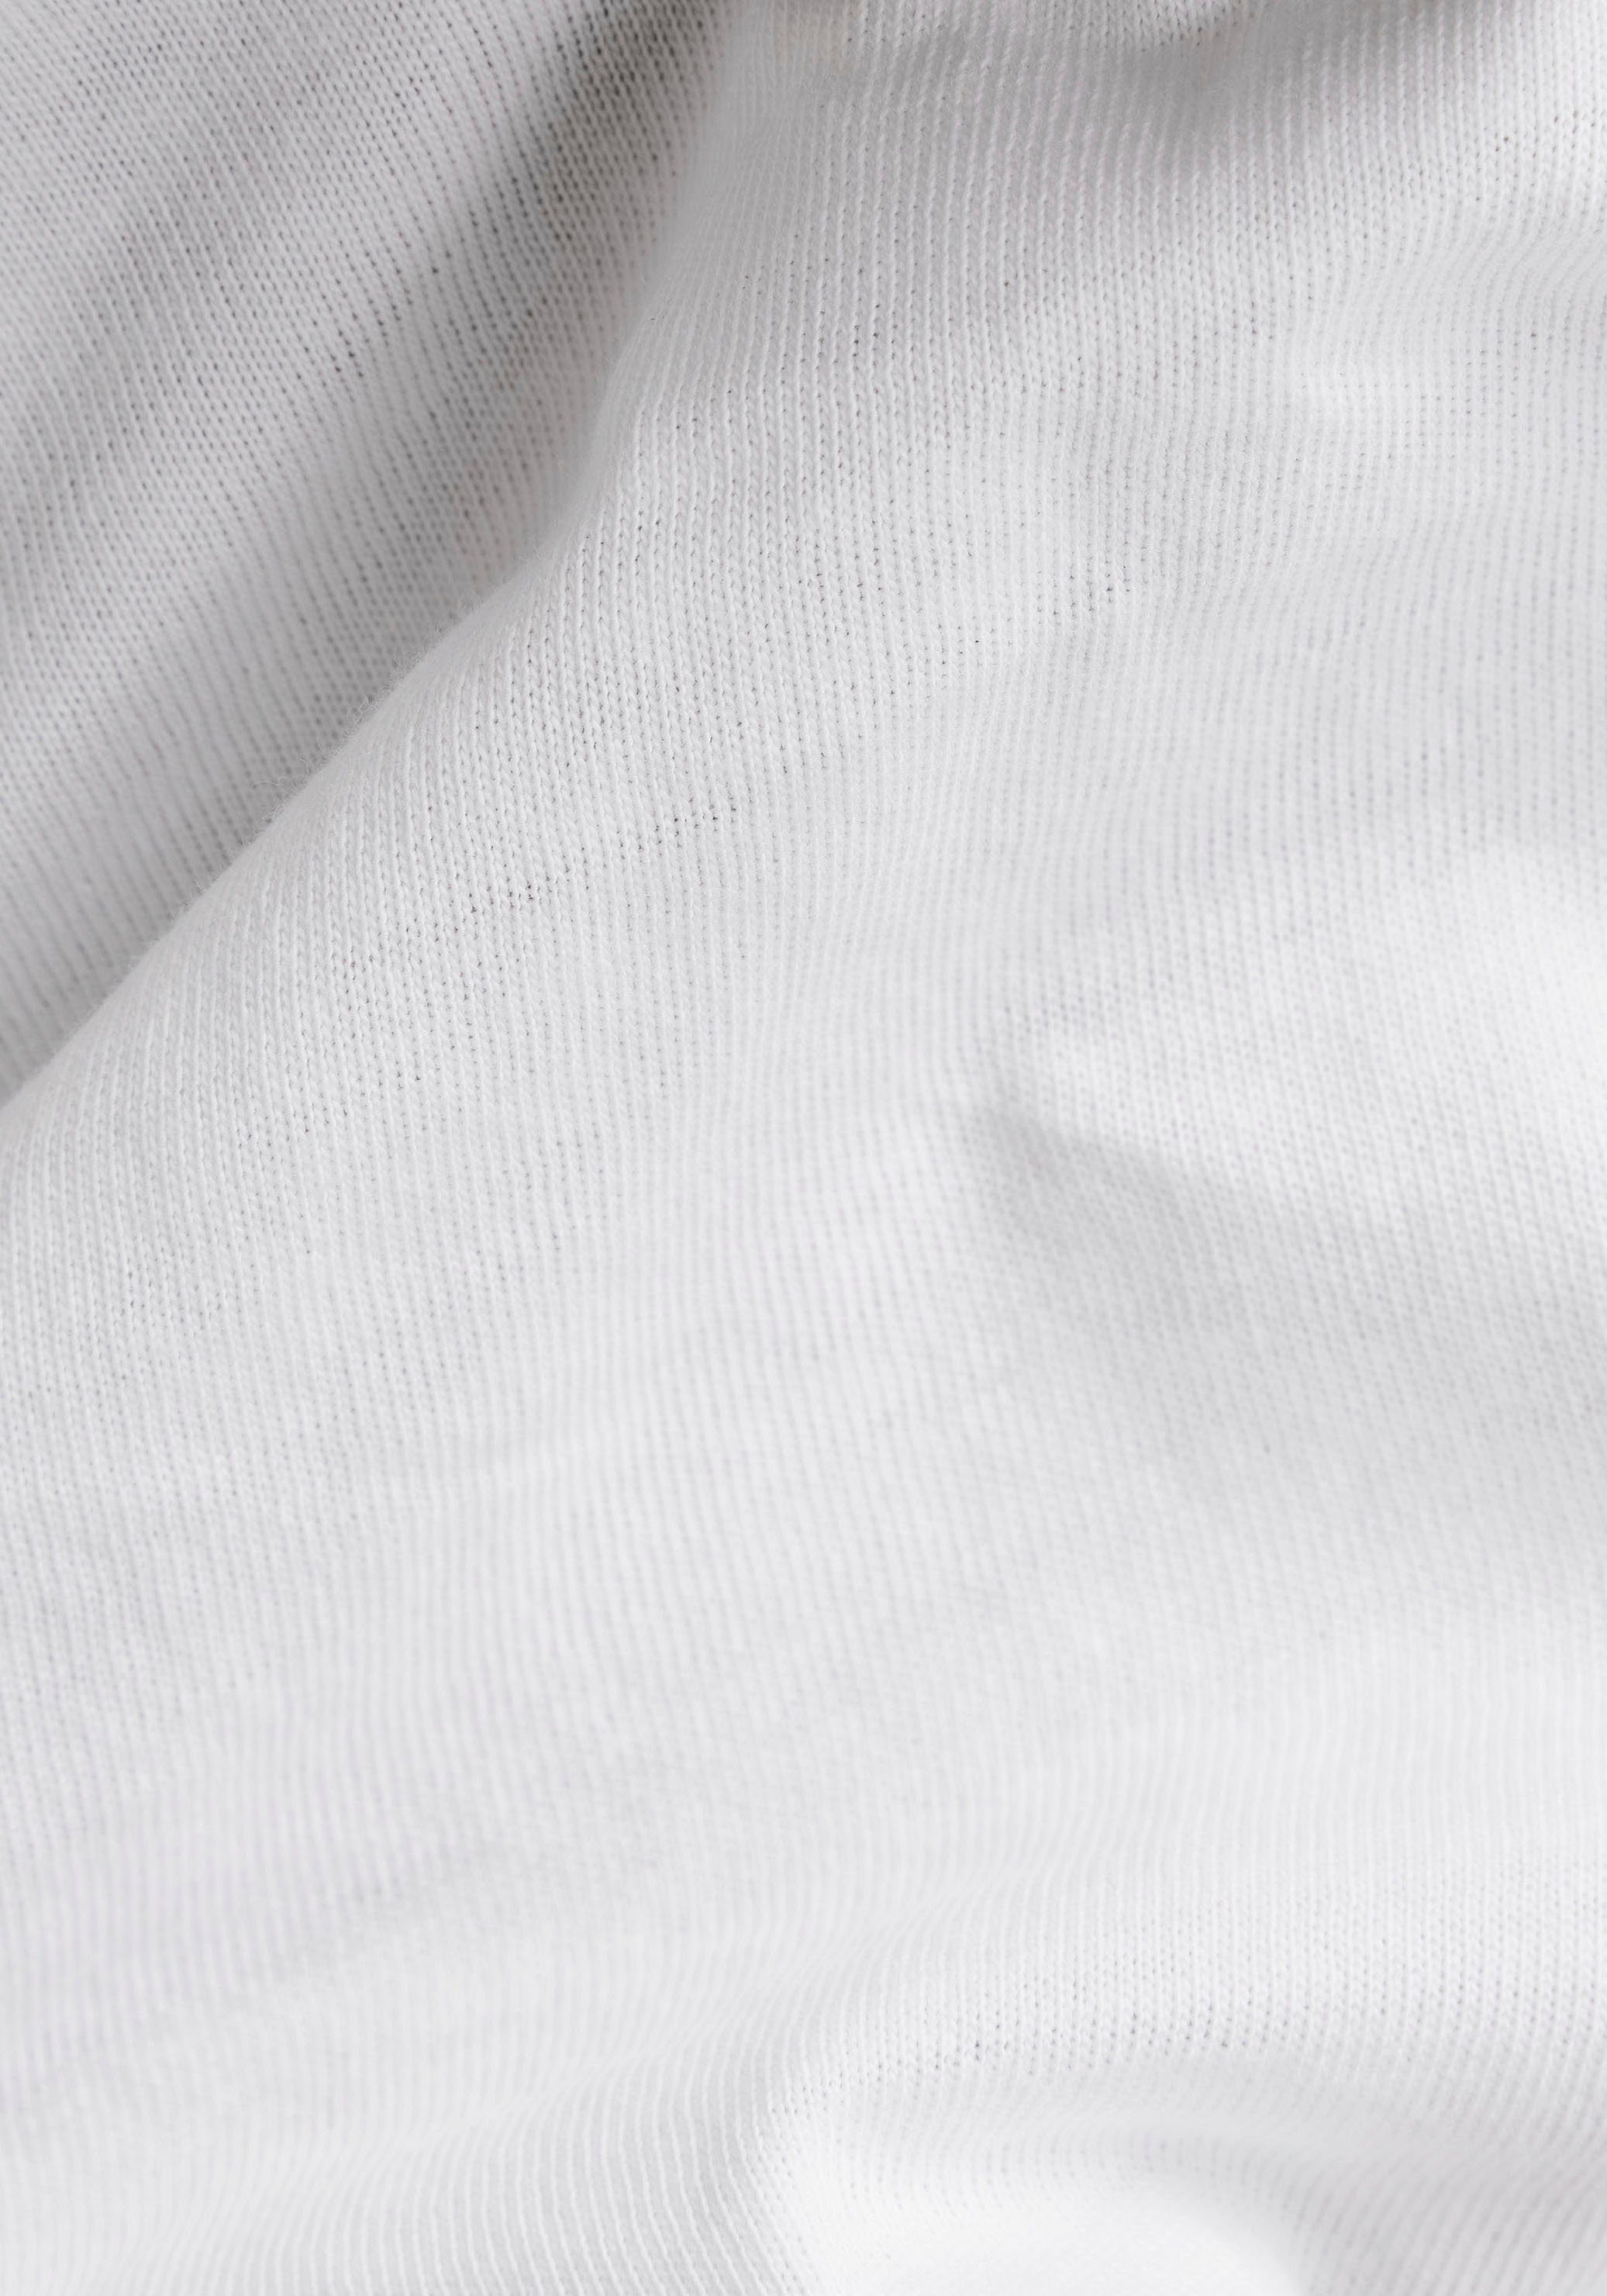 Logoprint Top RAW G-Star V-Shirt auf G-Star Eyben Slim mit Brust white kleinem der RAW